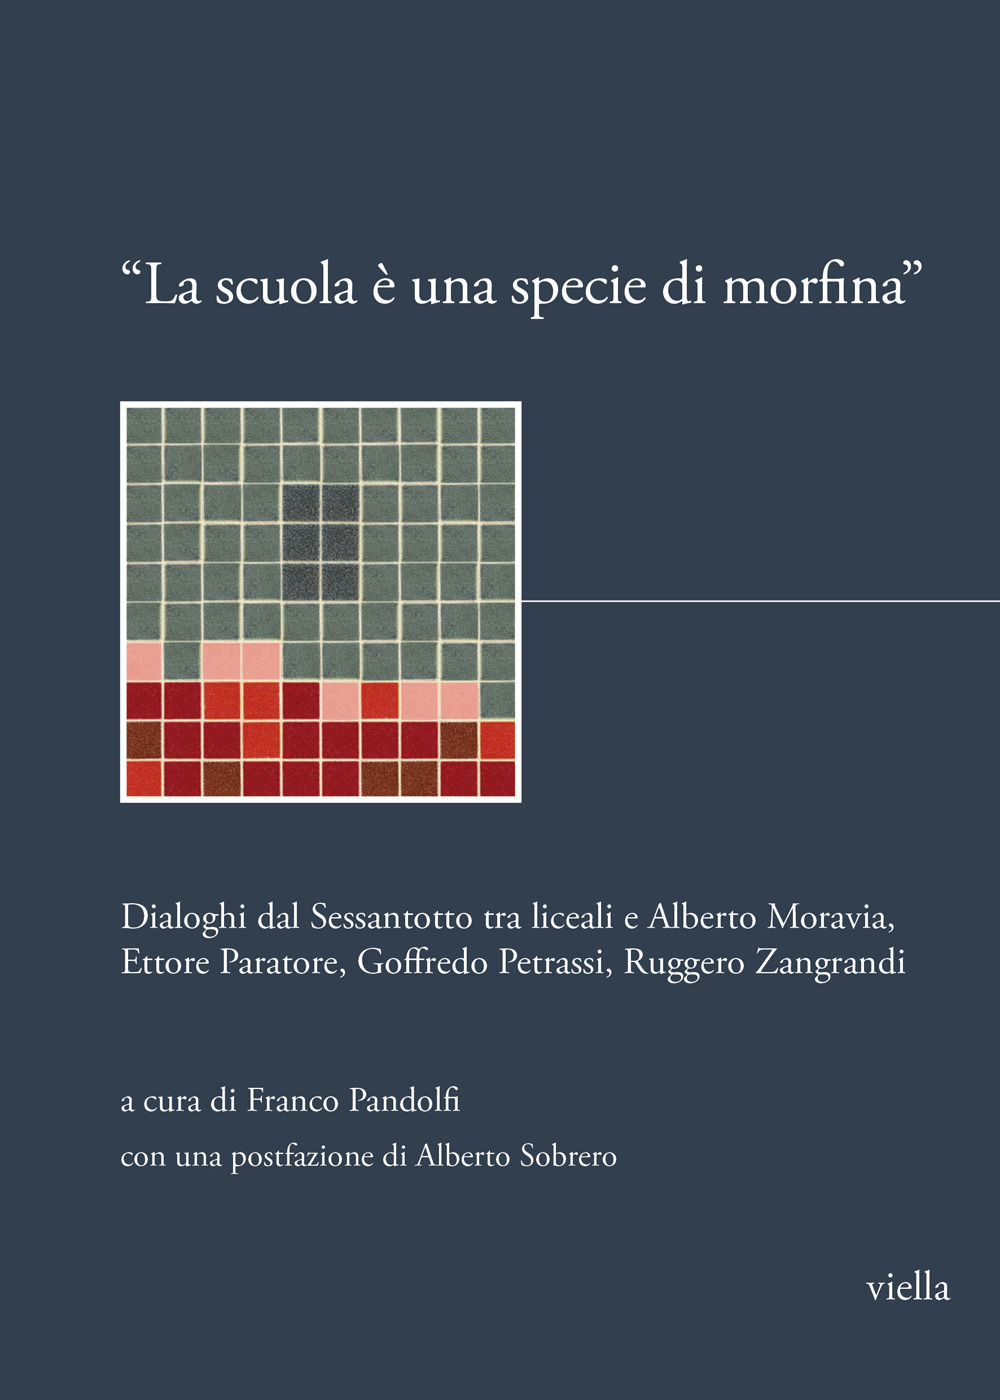 «La scuola è una specie di morfina». Dialoghi dal Sessantotto tra liceali e Alberto Moravia, Ettore Paratore, Goffredo Petrassi, Ruggero Zangrandi